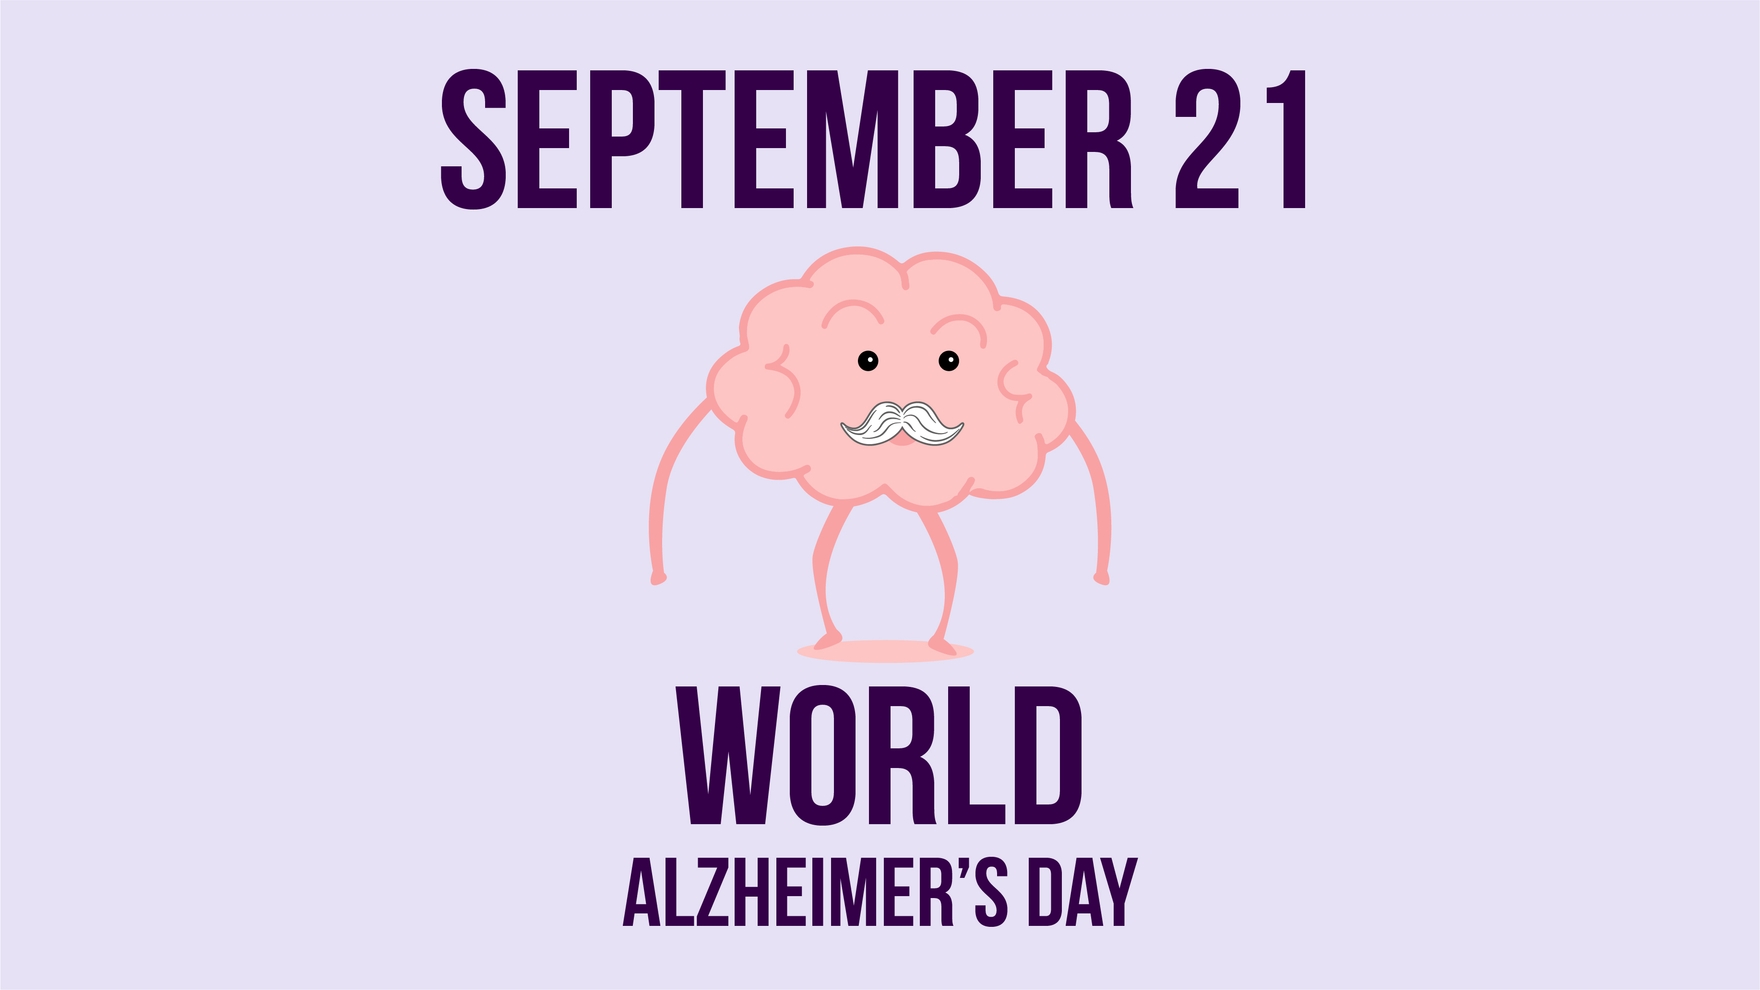 World Alzheimer’s Day Cartoon Background